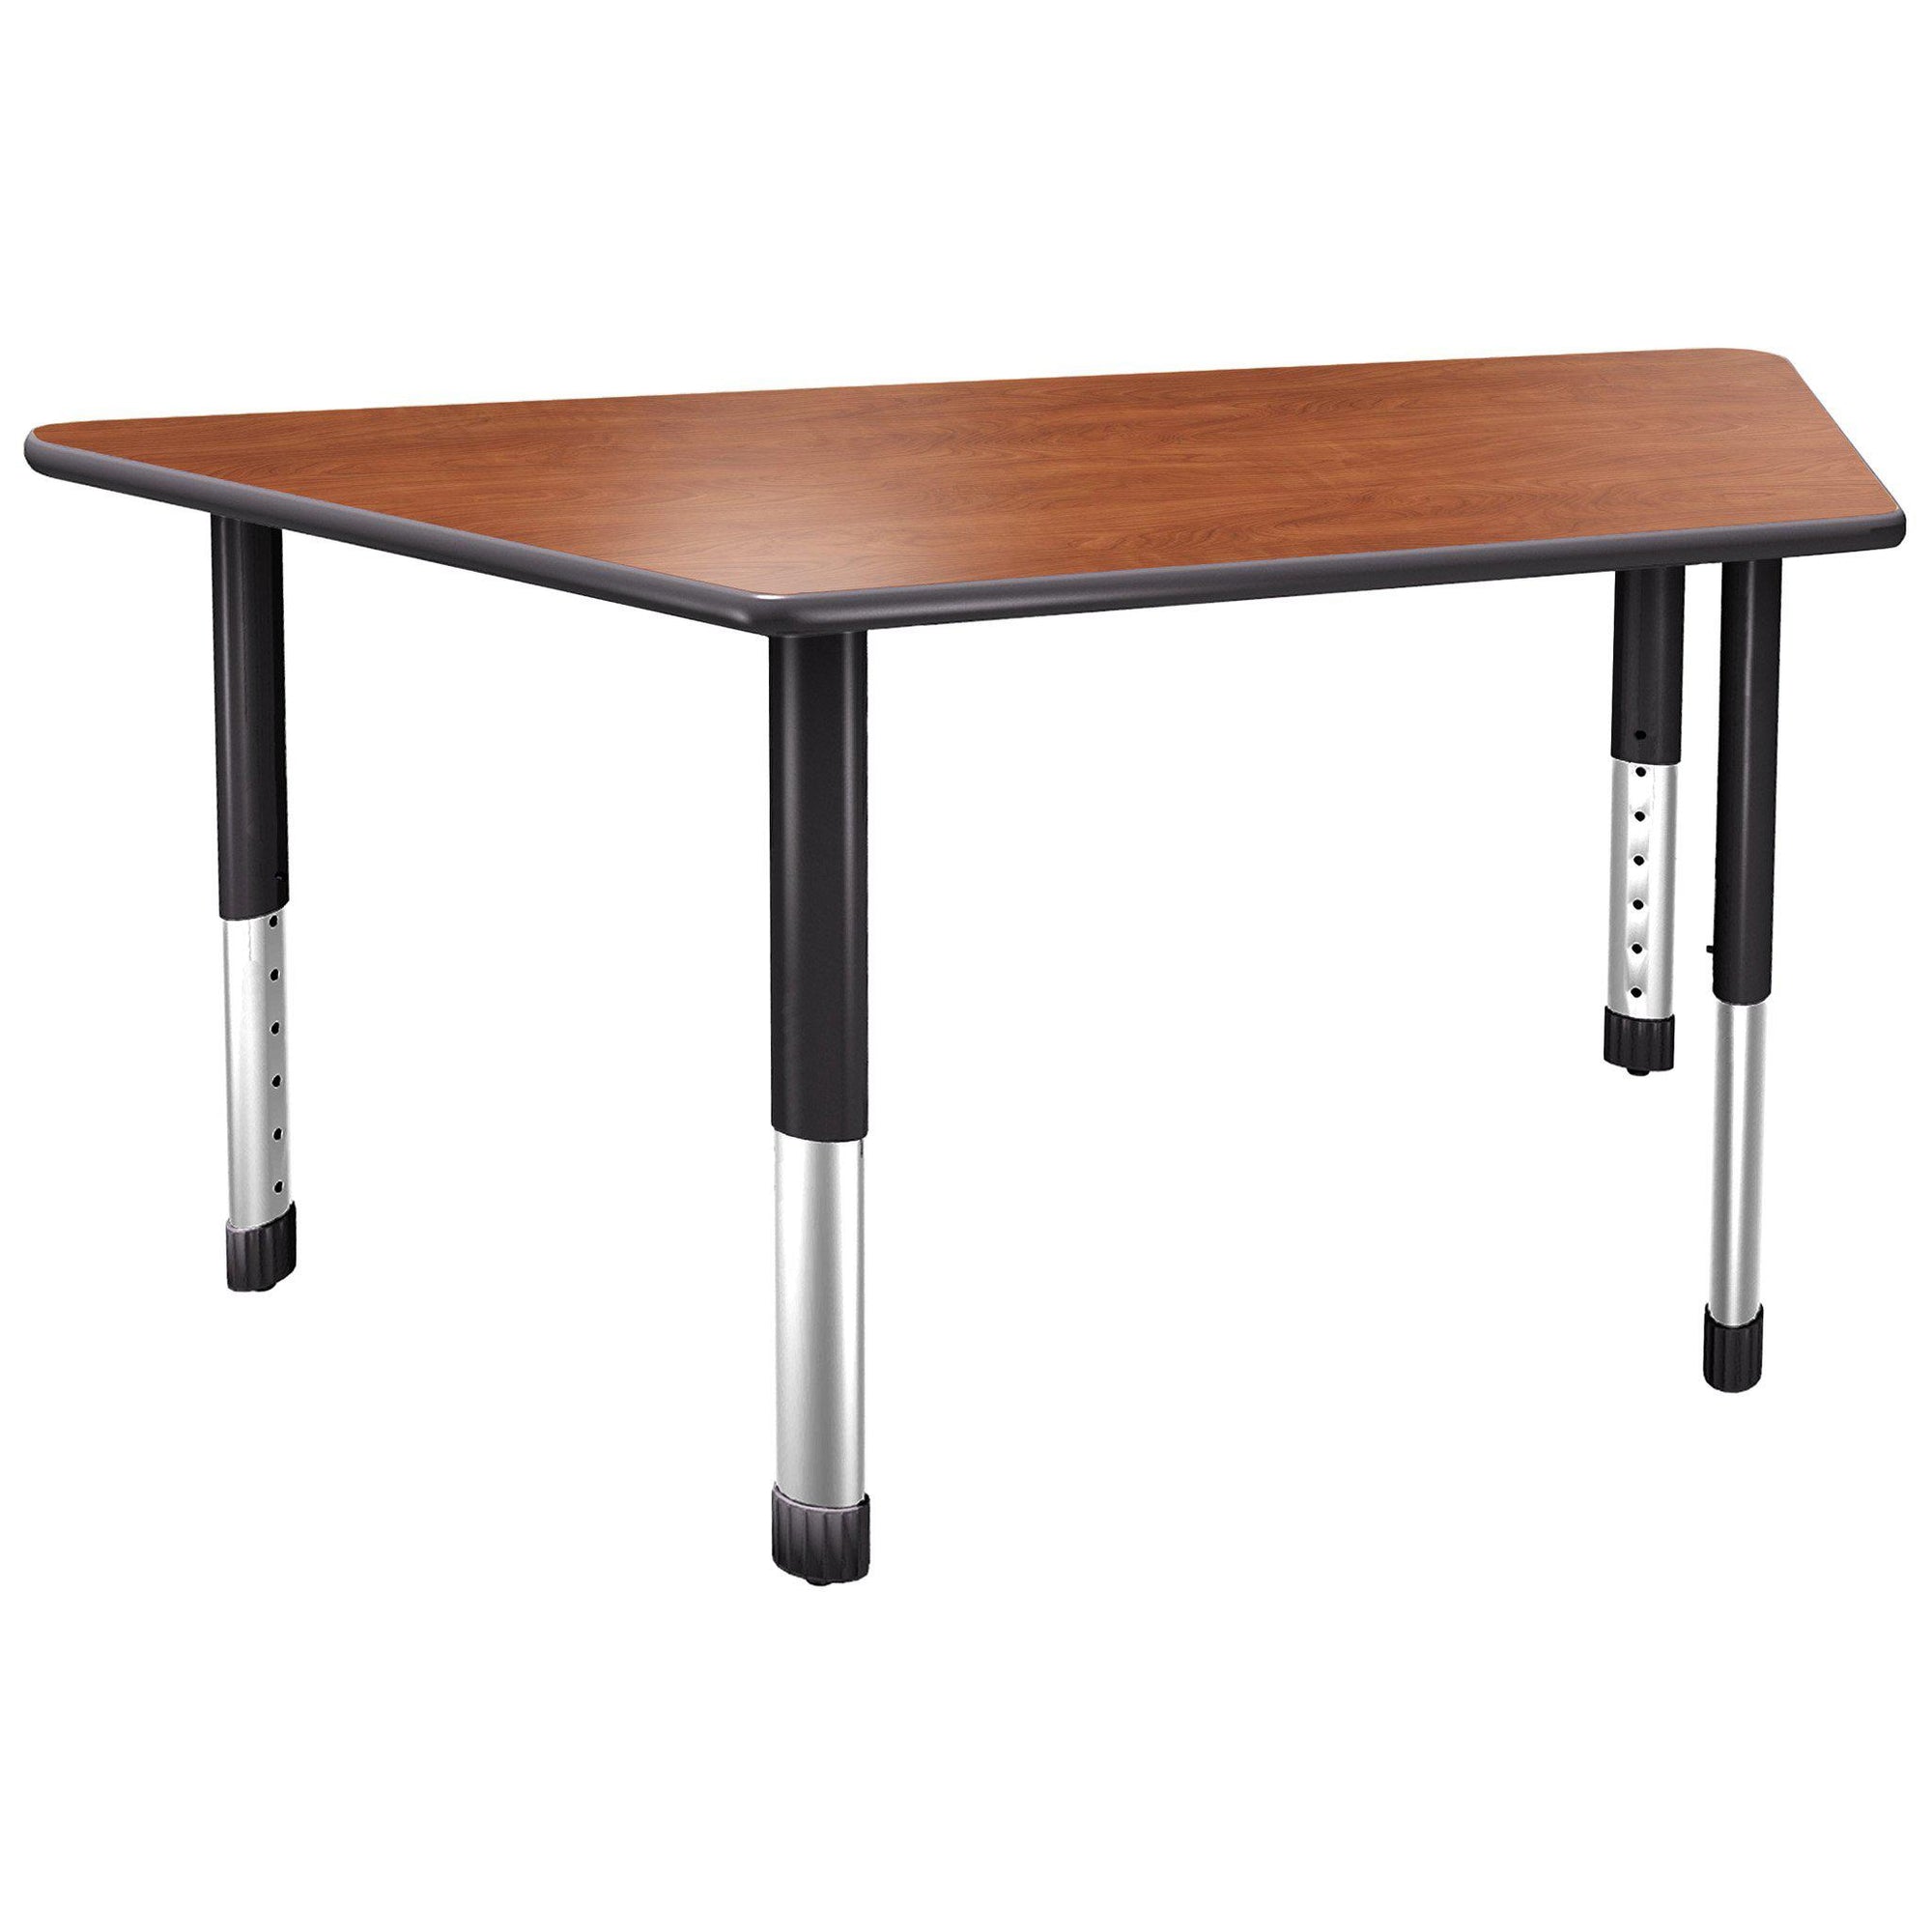 Aero Activity Table, 30" x 30" x 60" Trapezoid, Oval Adjustable Height Legs